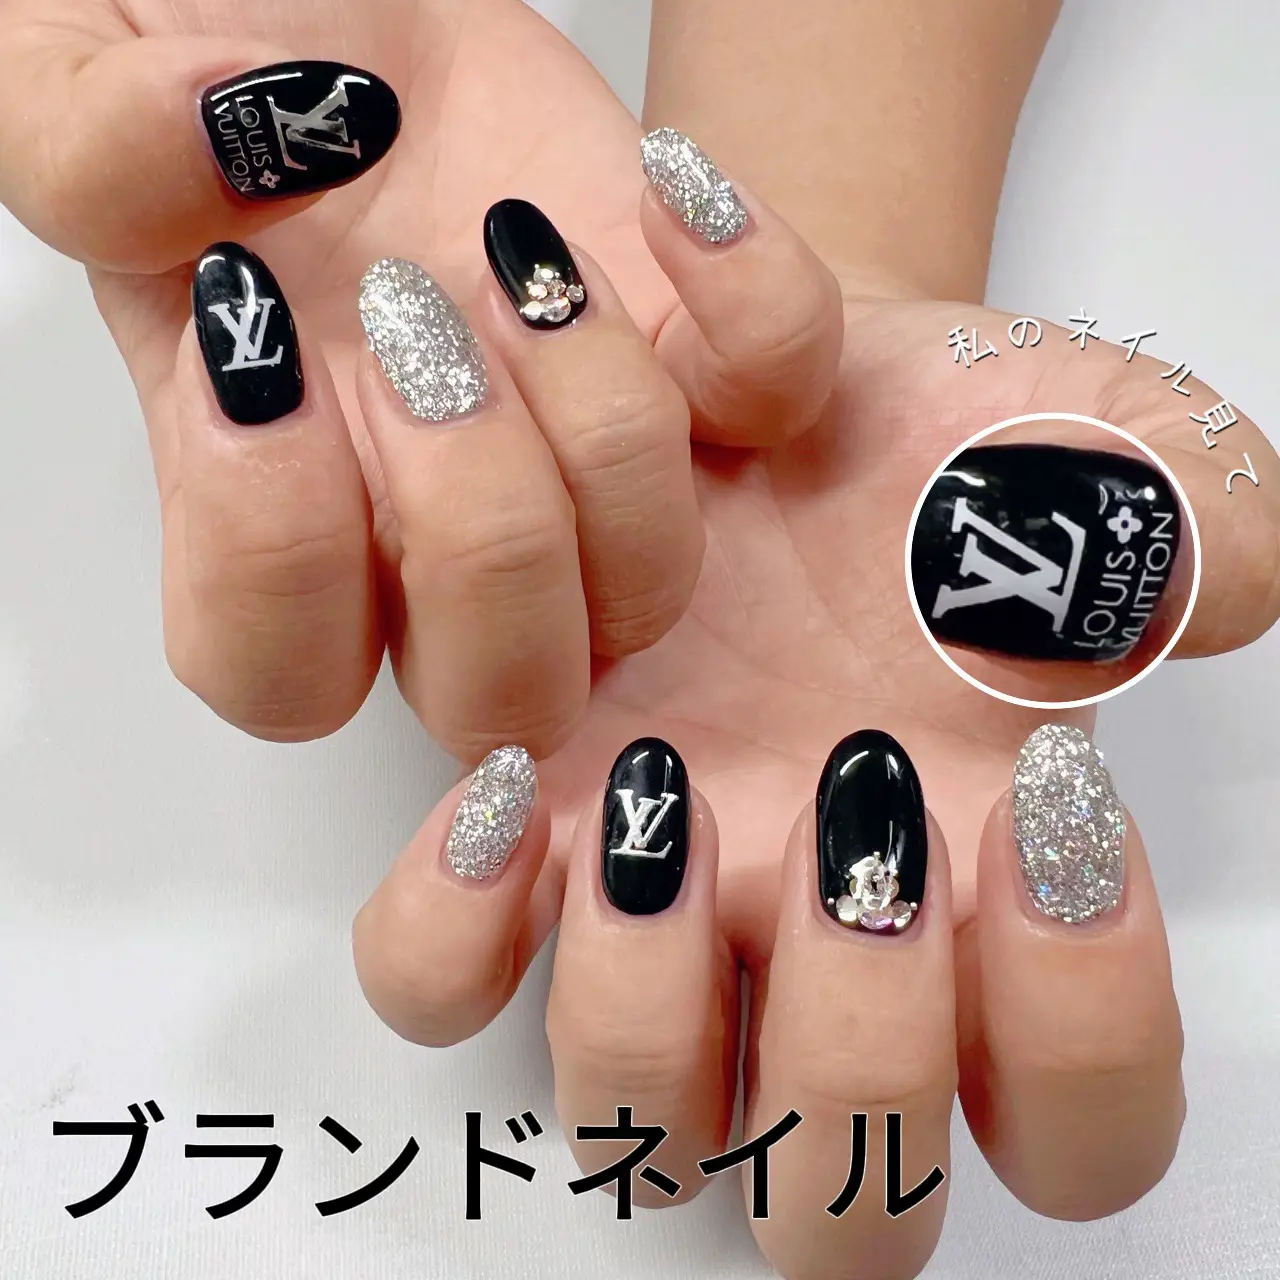 Louis Vuitton nails  Hot nail designs, Bling nails, Cute nails